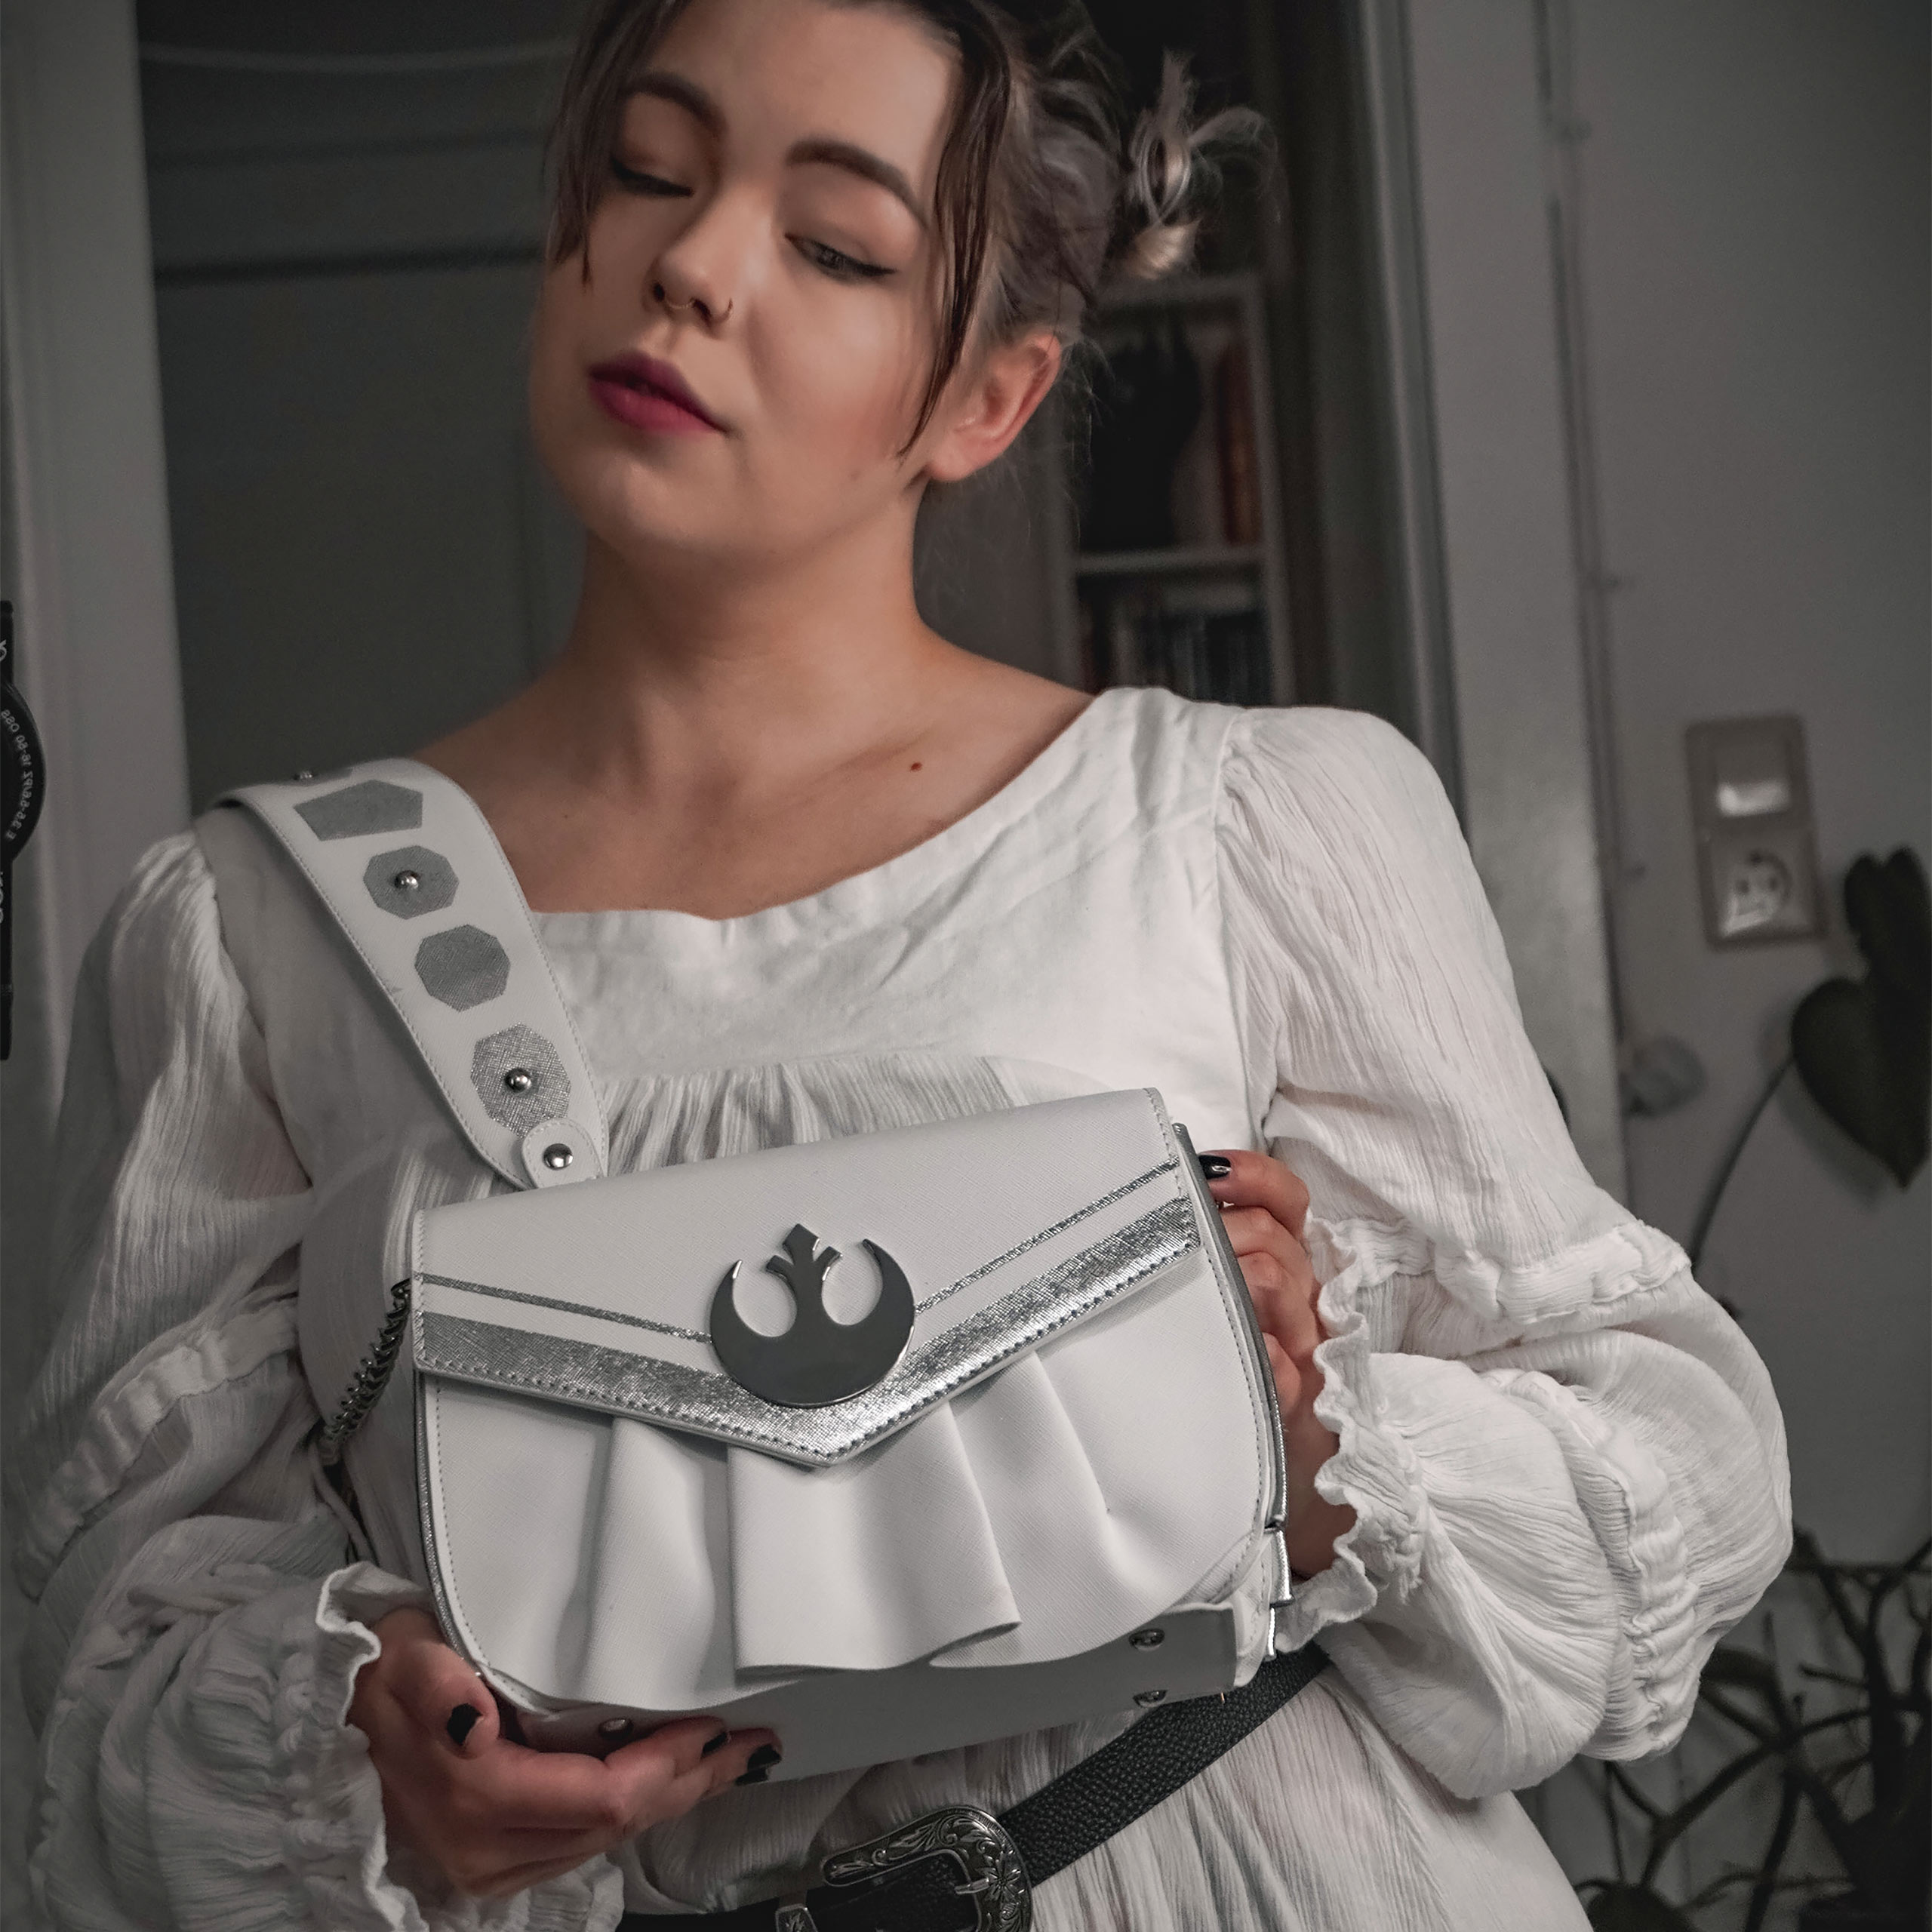 Leia White Cosplay Handtasche - Star Wars